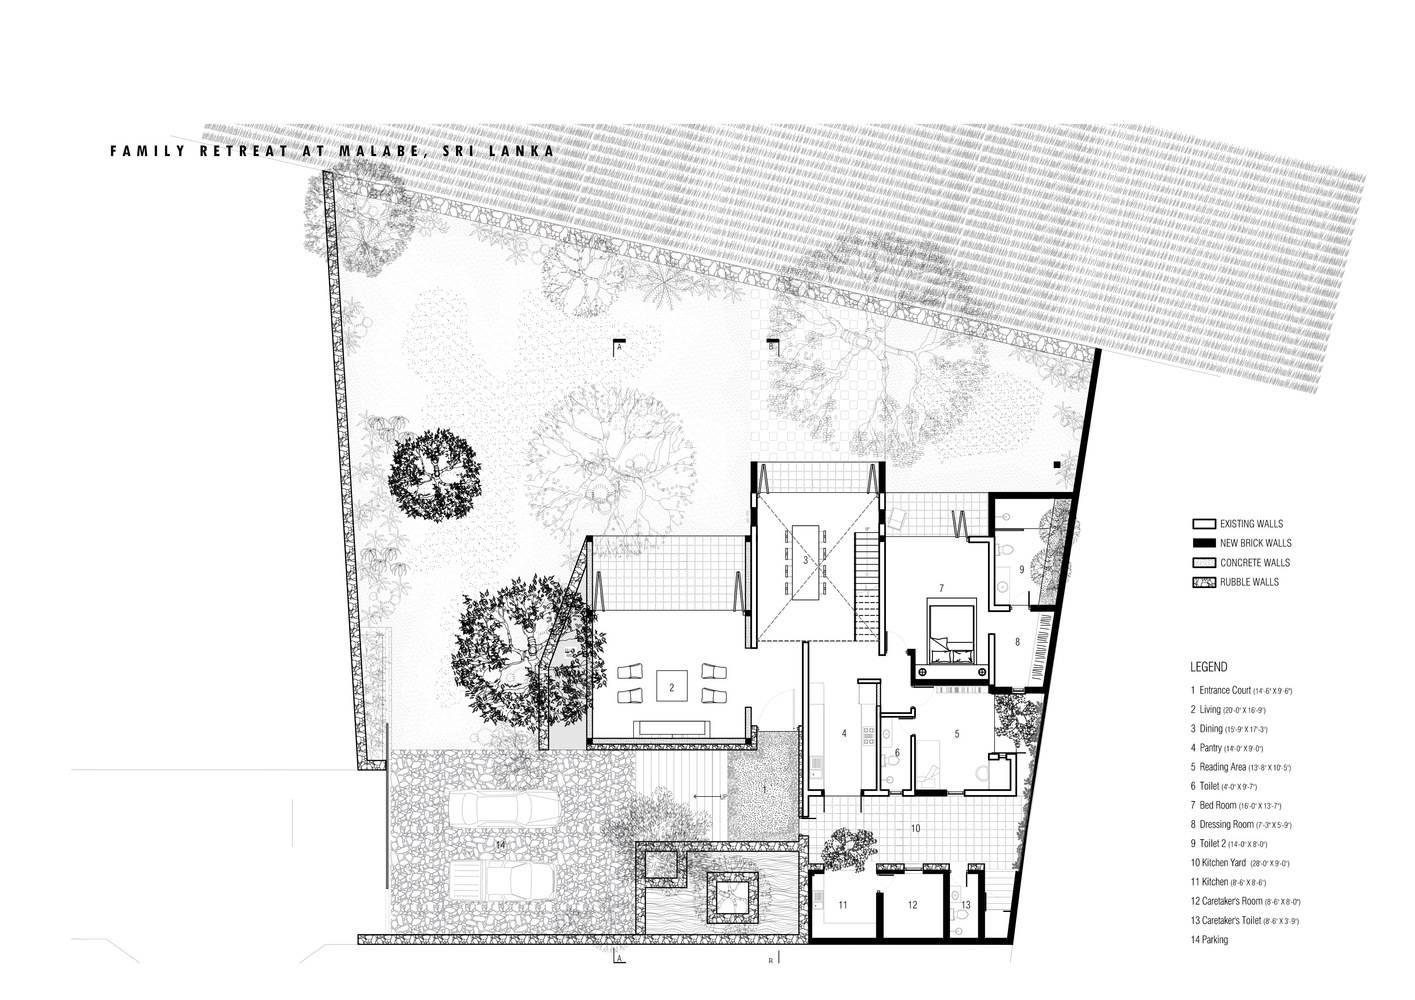 Palinda Kannangara Architects - plan